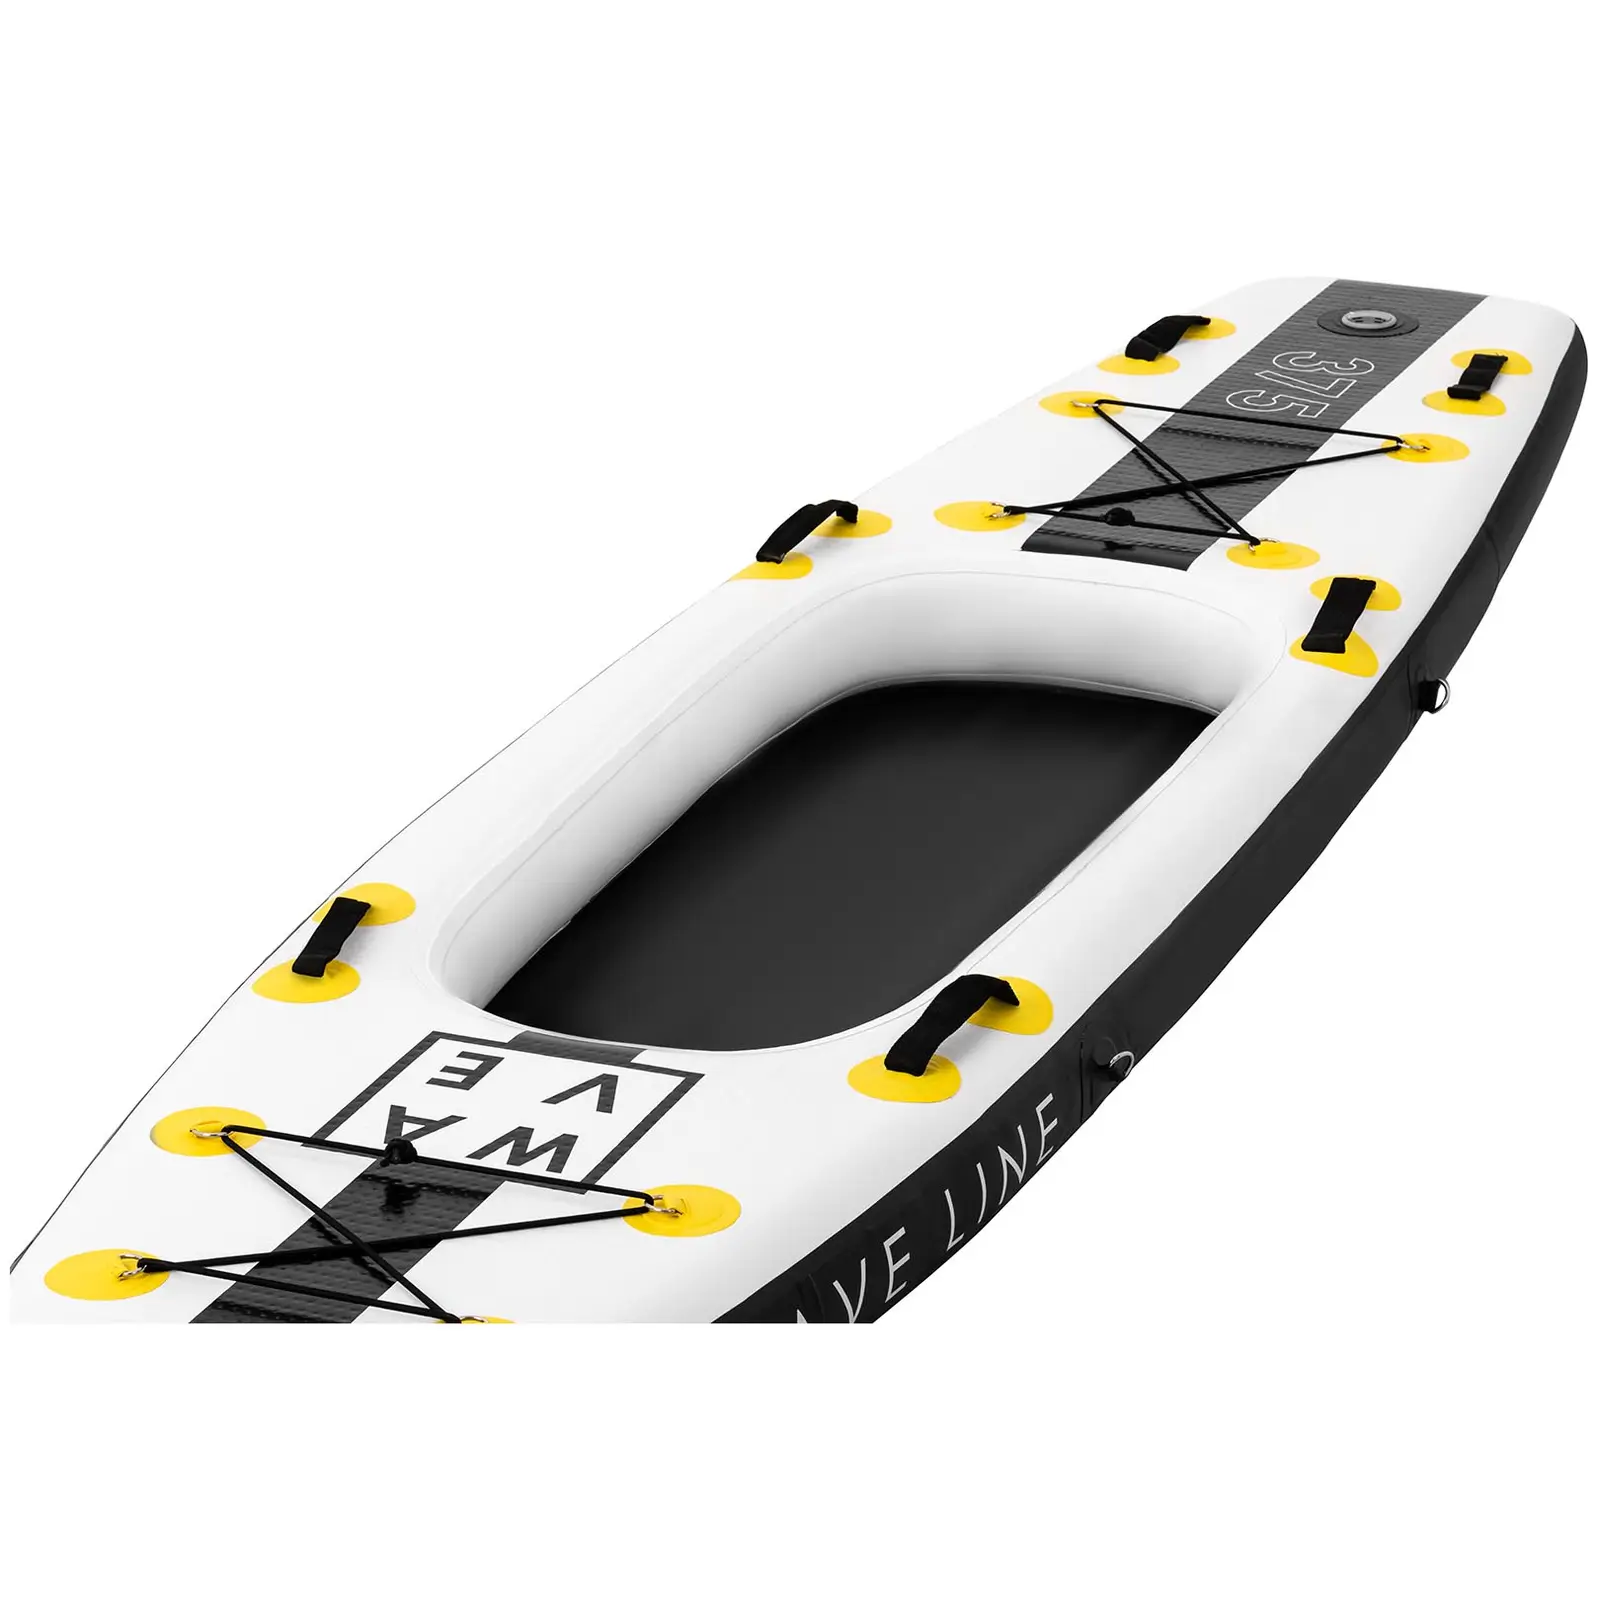 Stand up paddle gonflable - 120 kg - Noir/jaune - Kit incluant pagaie, siège et accessoires